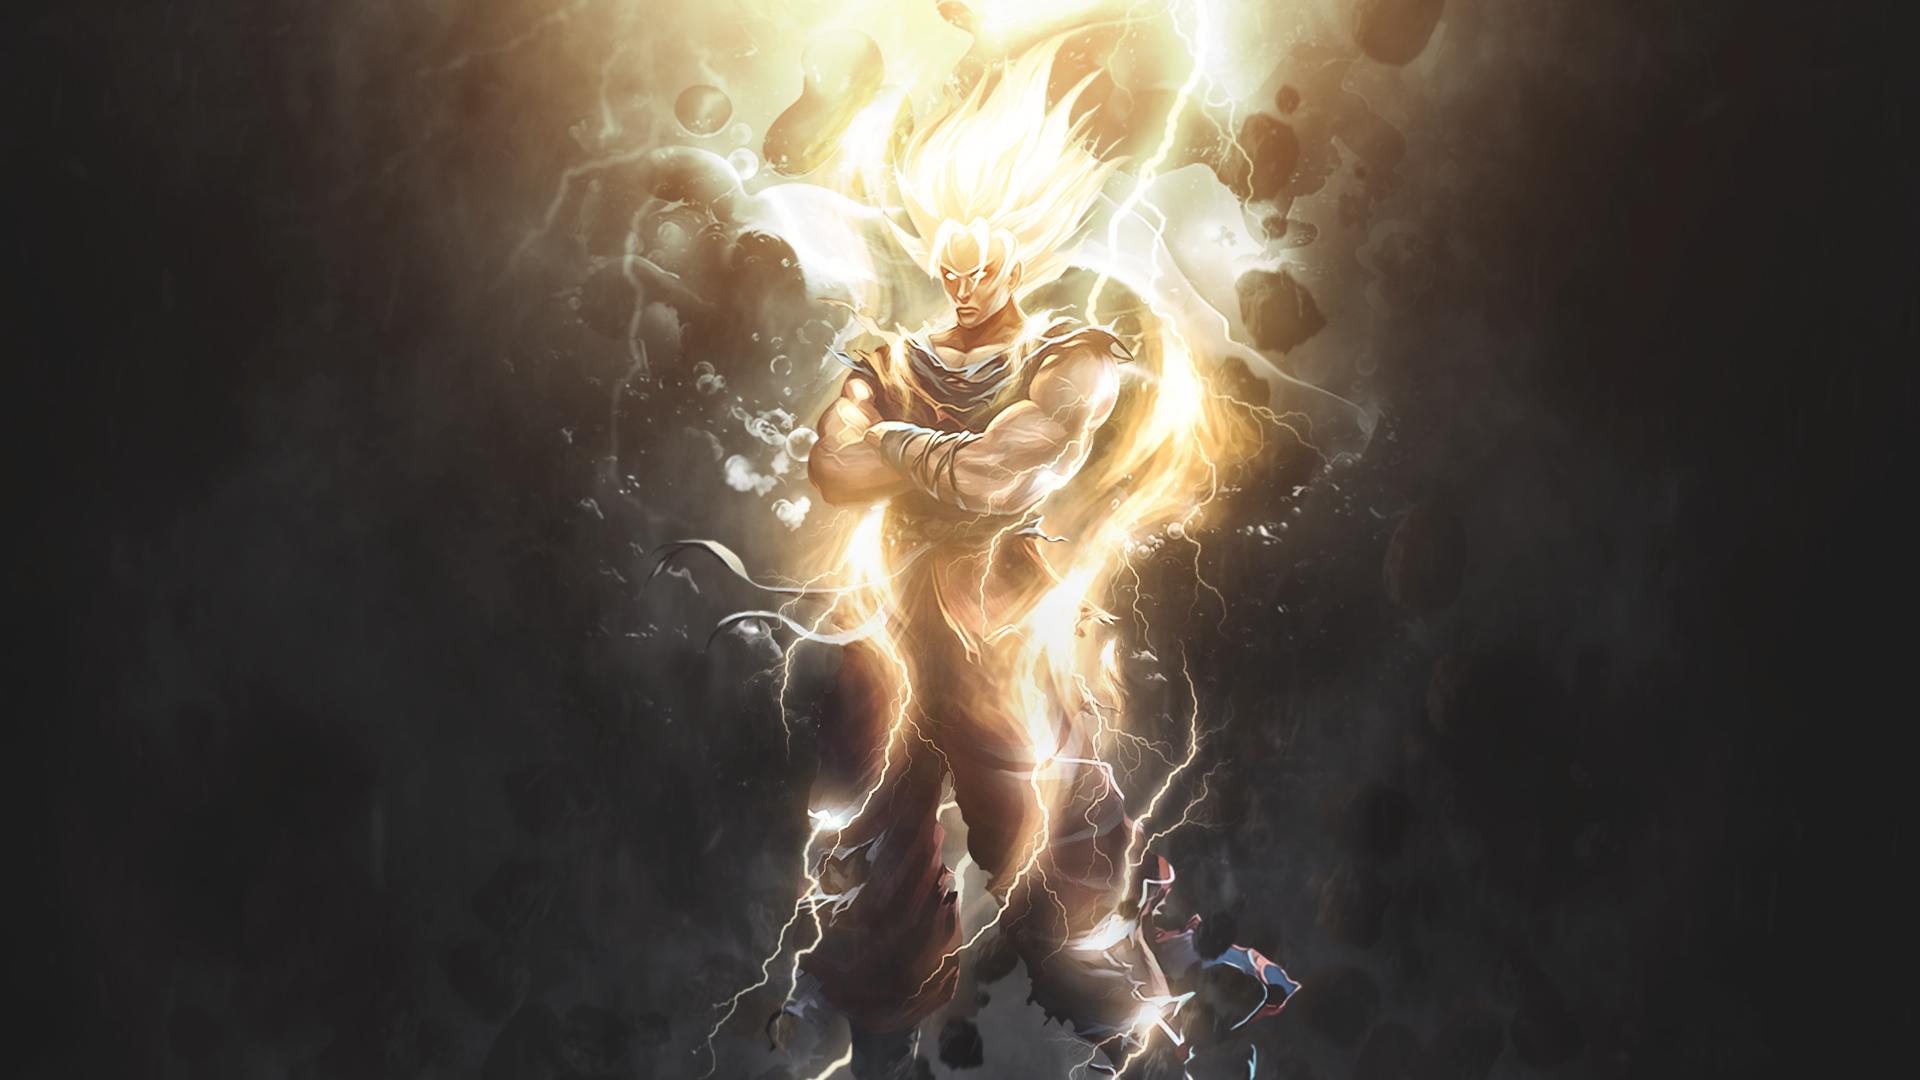 Dragon Ball Z Goku Ultra Instinct Fire Wallpapers